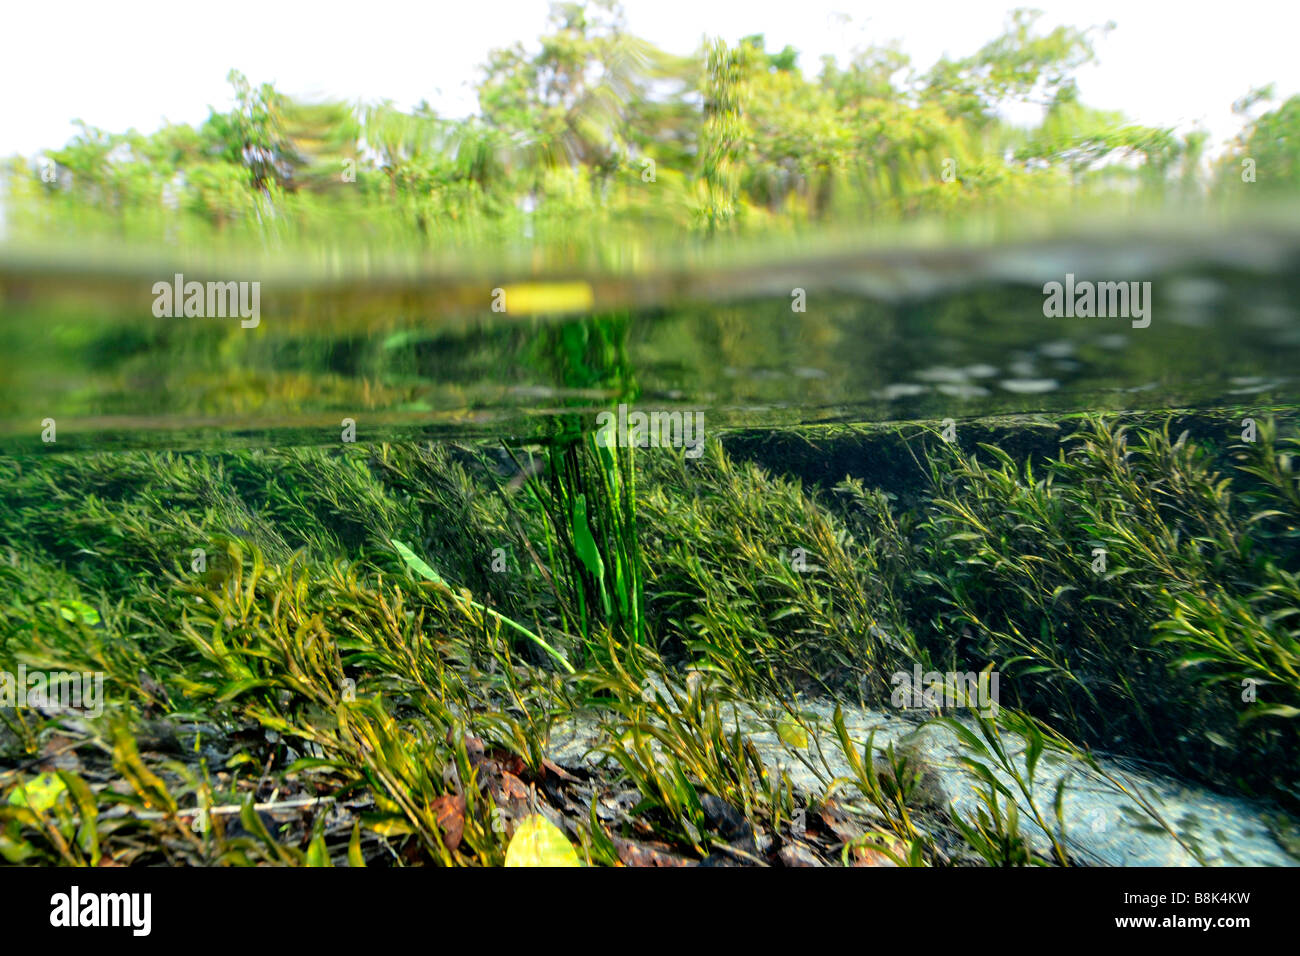 Immagine sdoppiata della lussureggiante vegetazione sopra e sotto l'acqua, fiume Sucuri, Bonito, Mato Grosso do Sul, Brasile Foto Stock